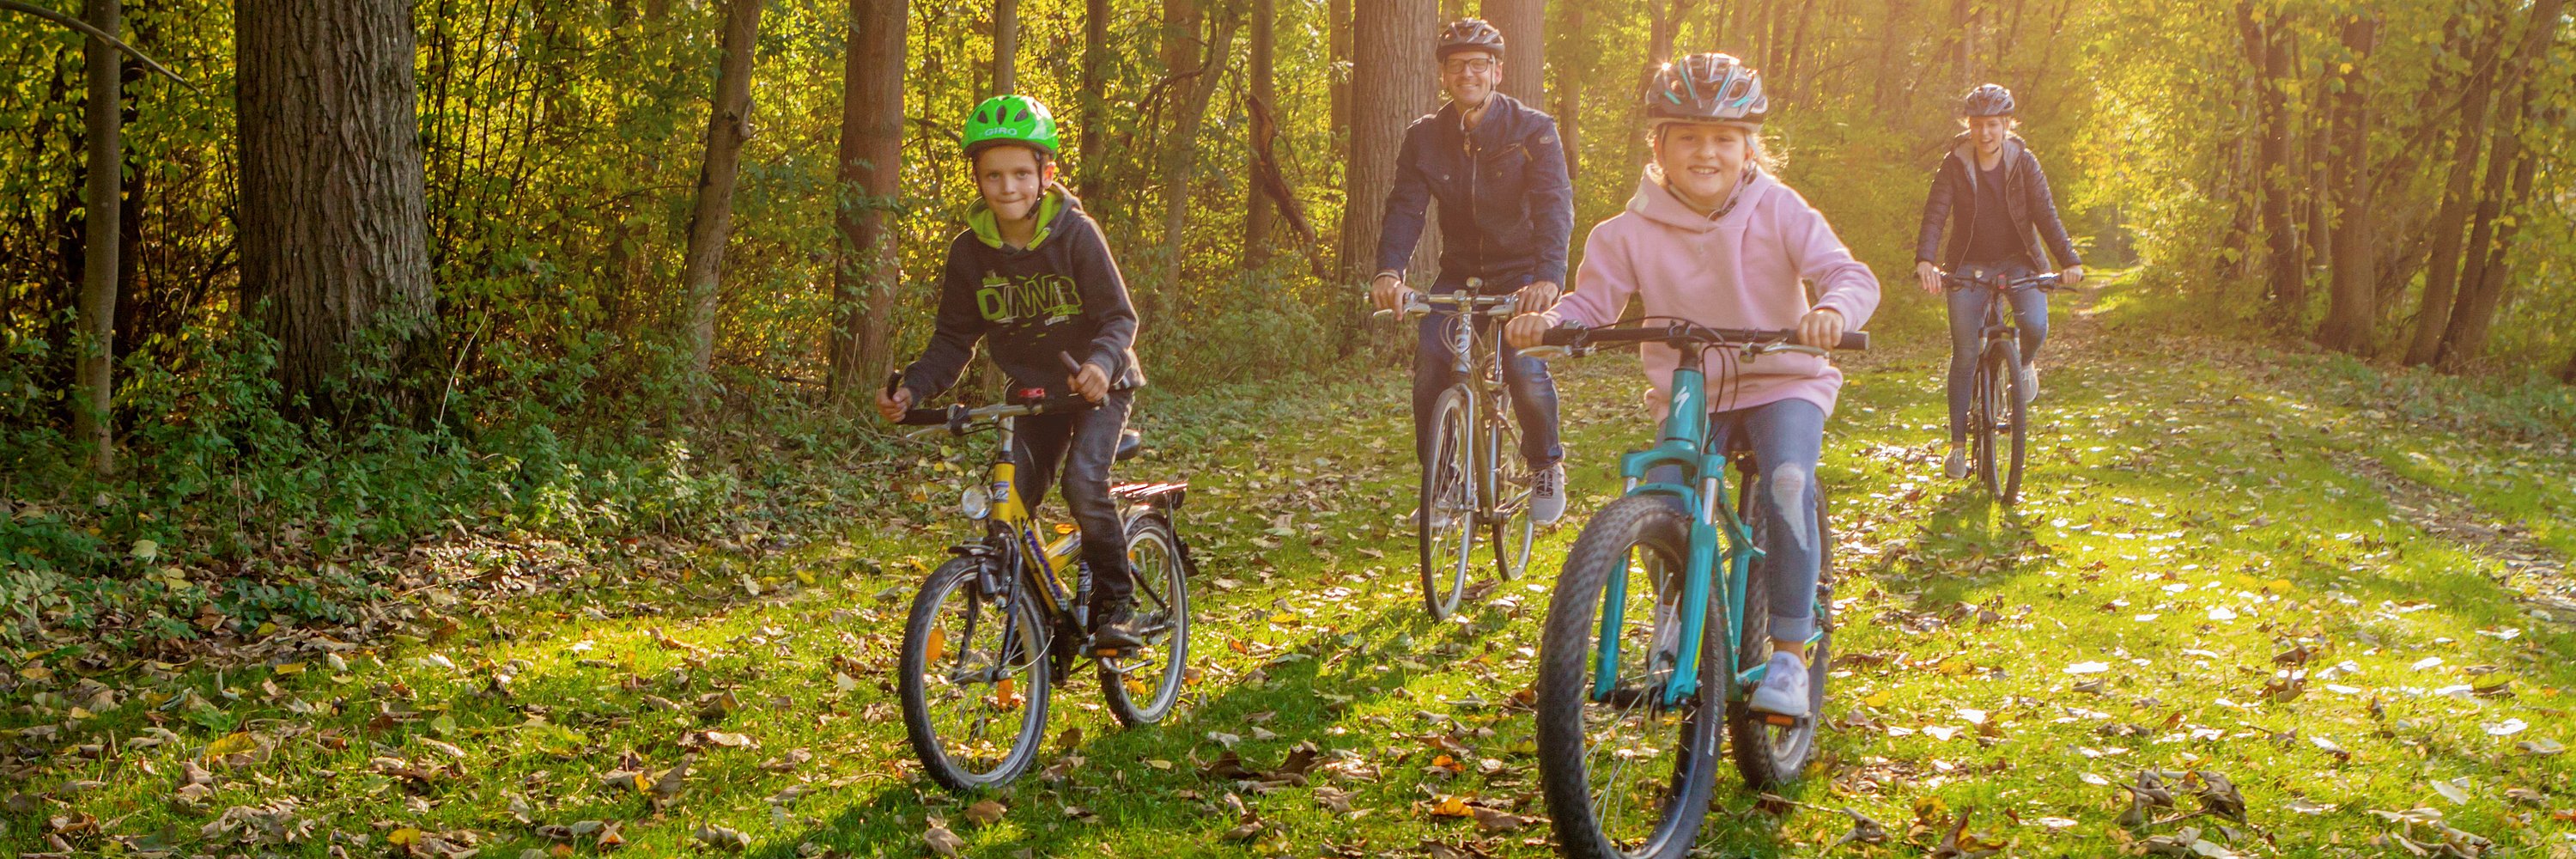 Family rides a bicycle. photo: Philipp Röger für die Stadt Günzburg